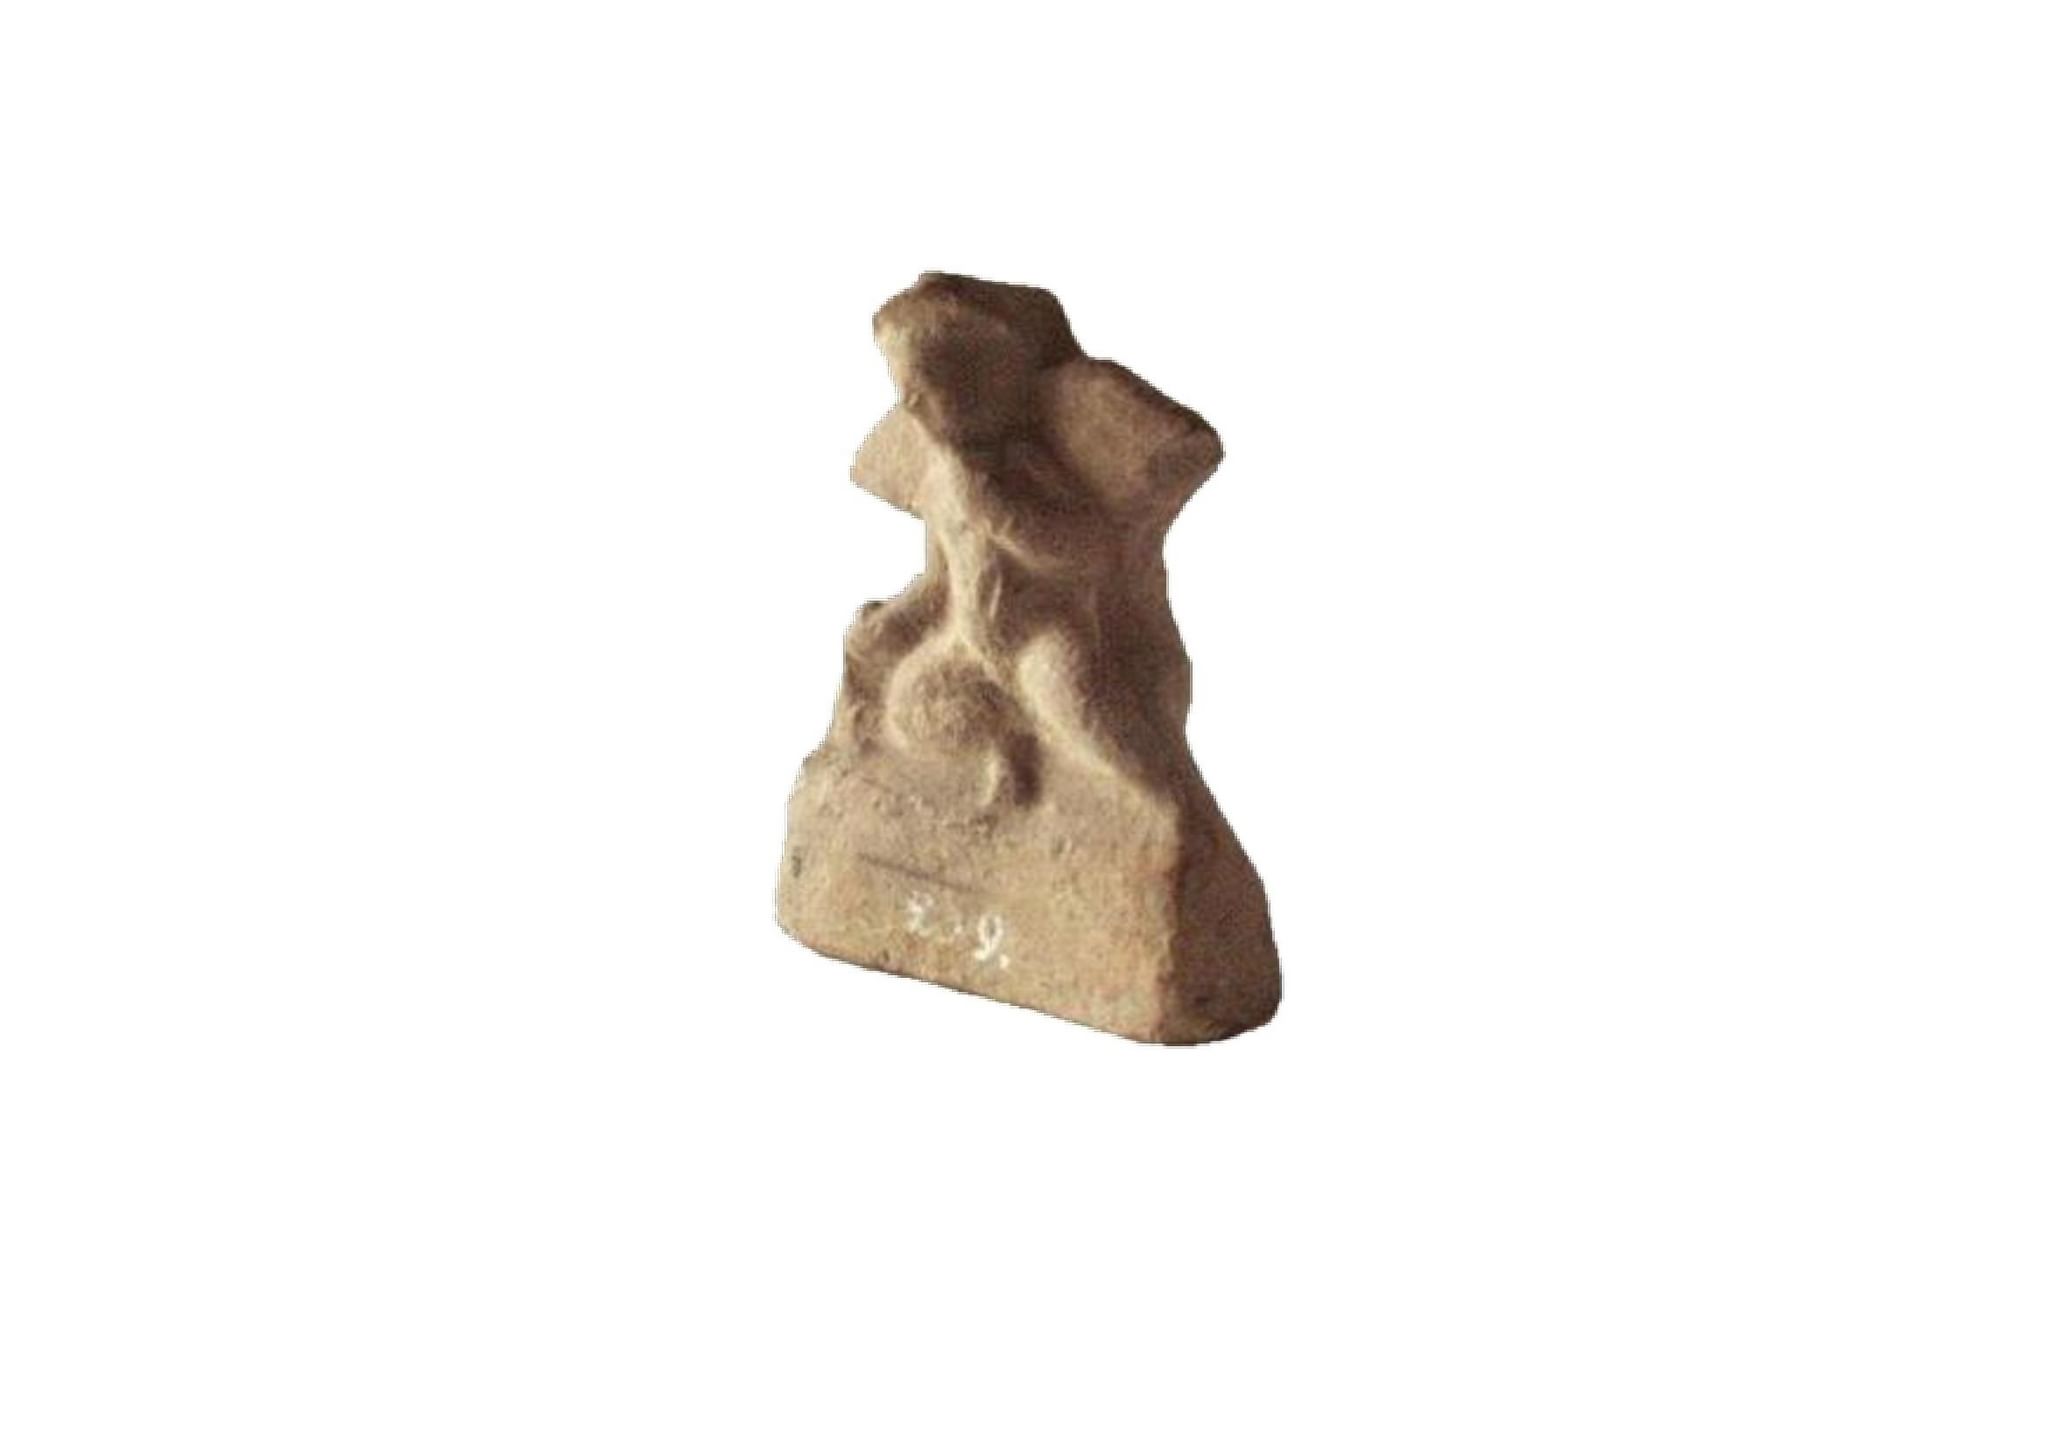 Фигурка Бог любви. Эрот с гусем терракотовая статуэтка Боспор. Eros statuette. Экспонат 1 краткое содержание